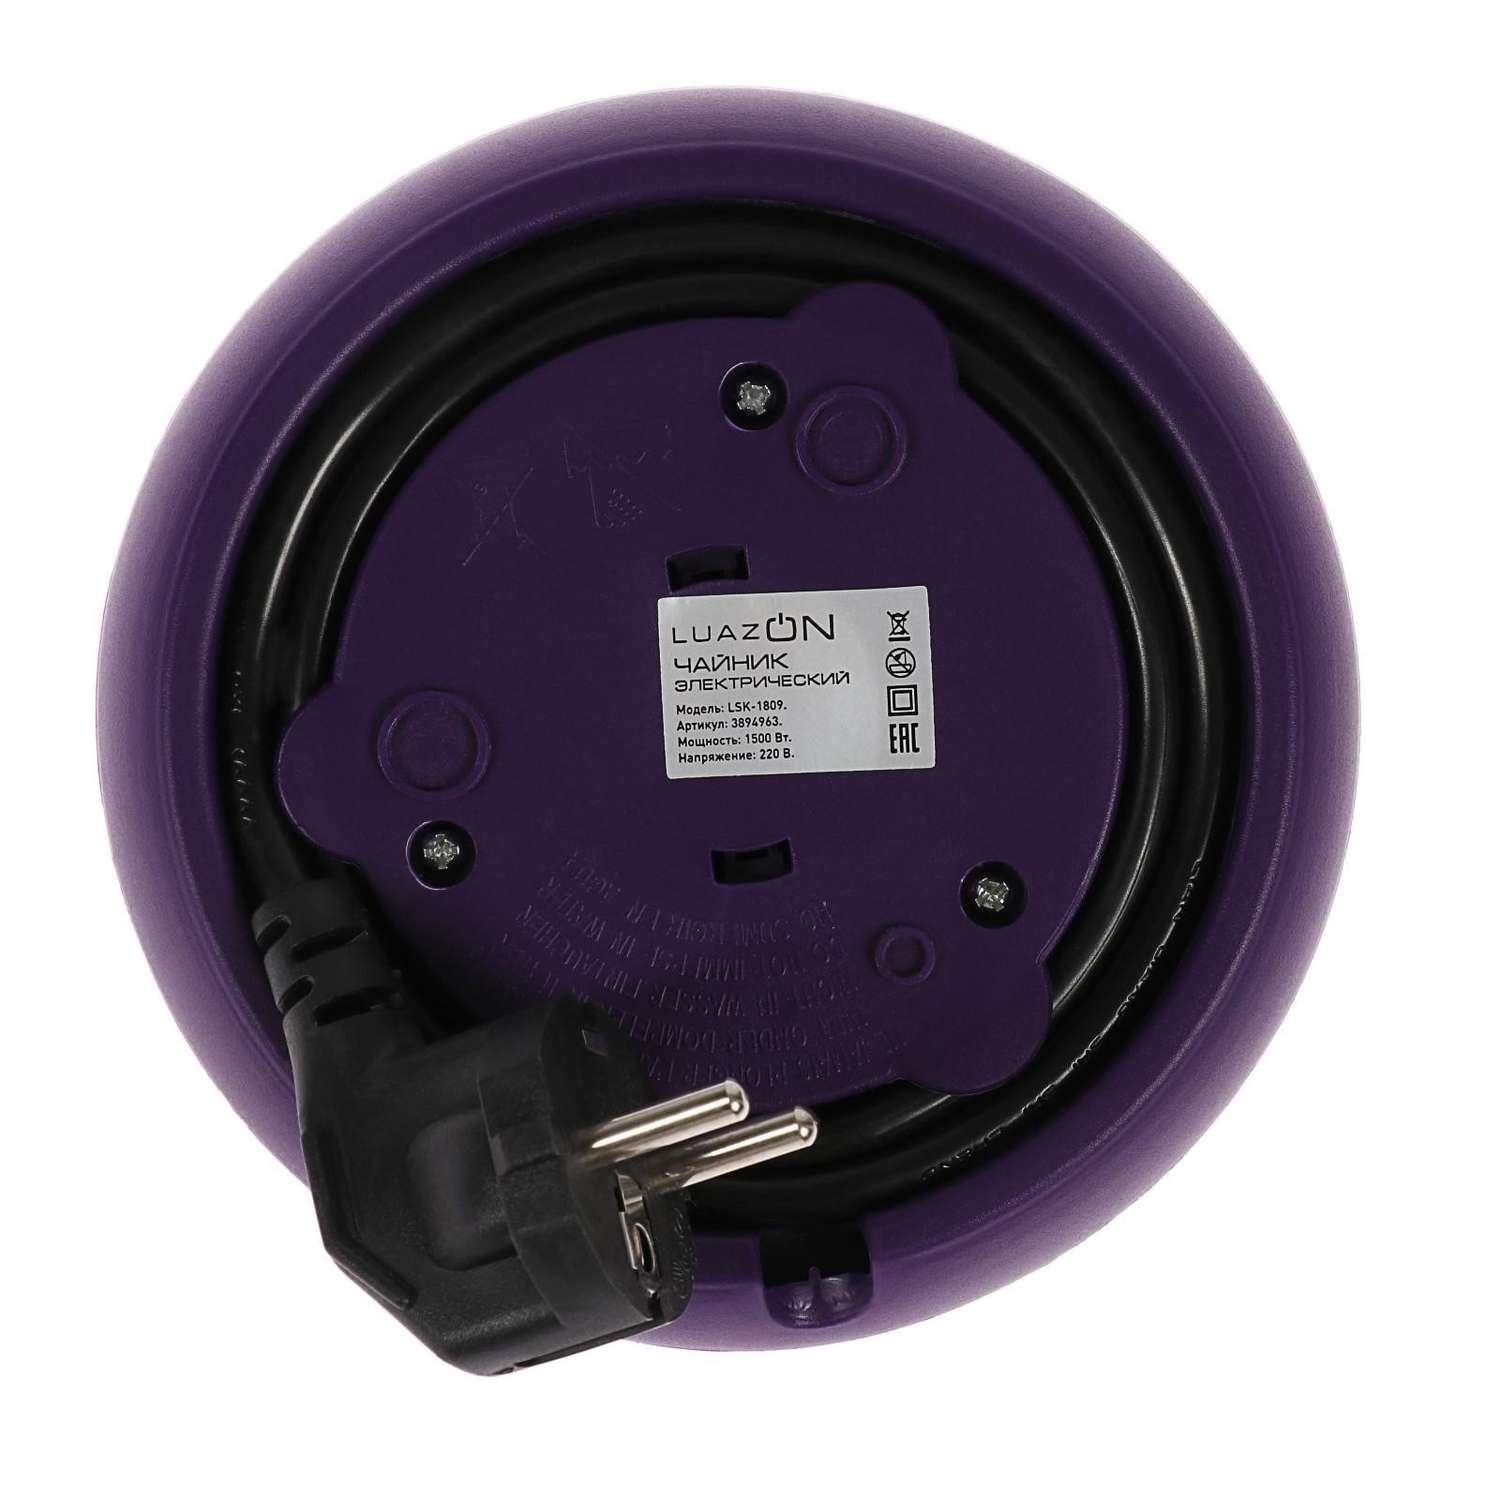 Чайник Luazon Home электрический LSK-1809 стекло 1.8 л 1500 Вт подсветка фиолетовый - фото 10